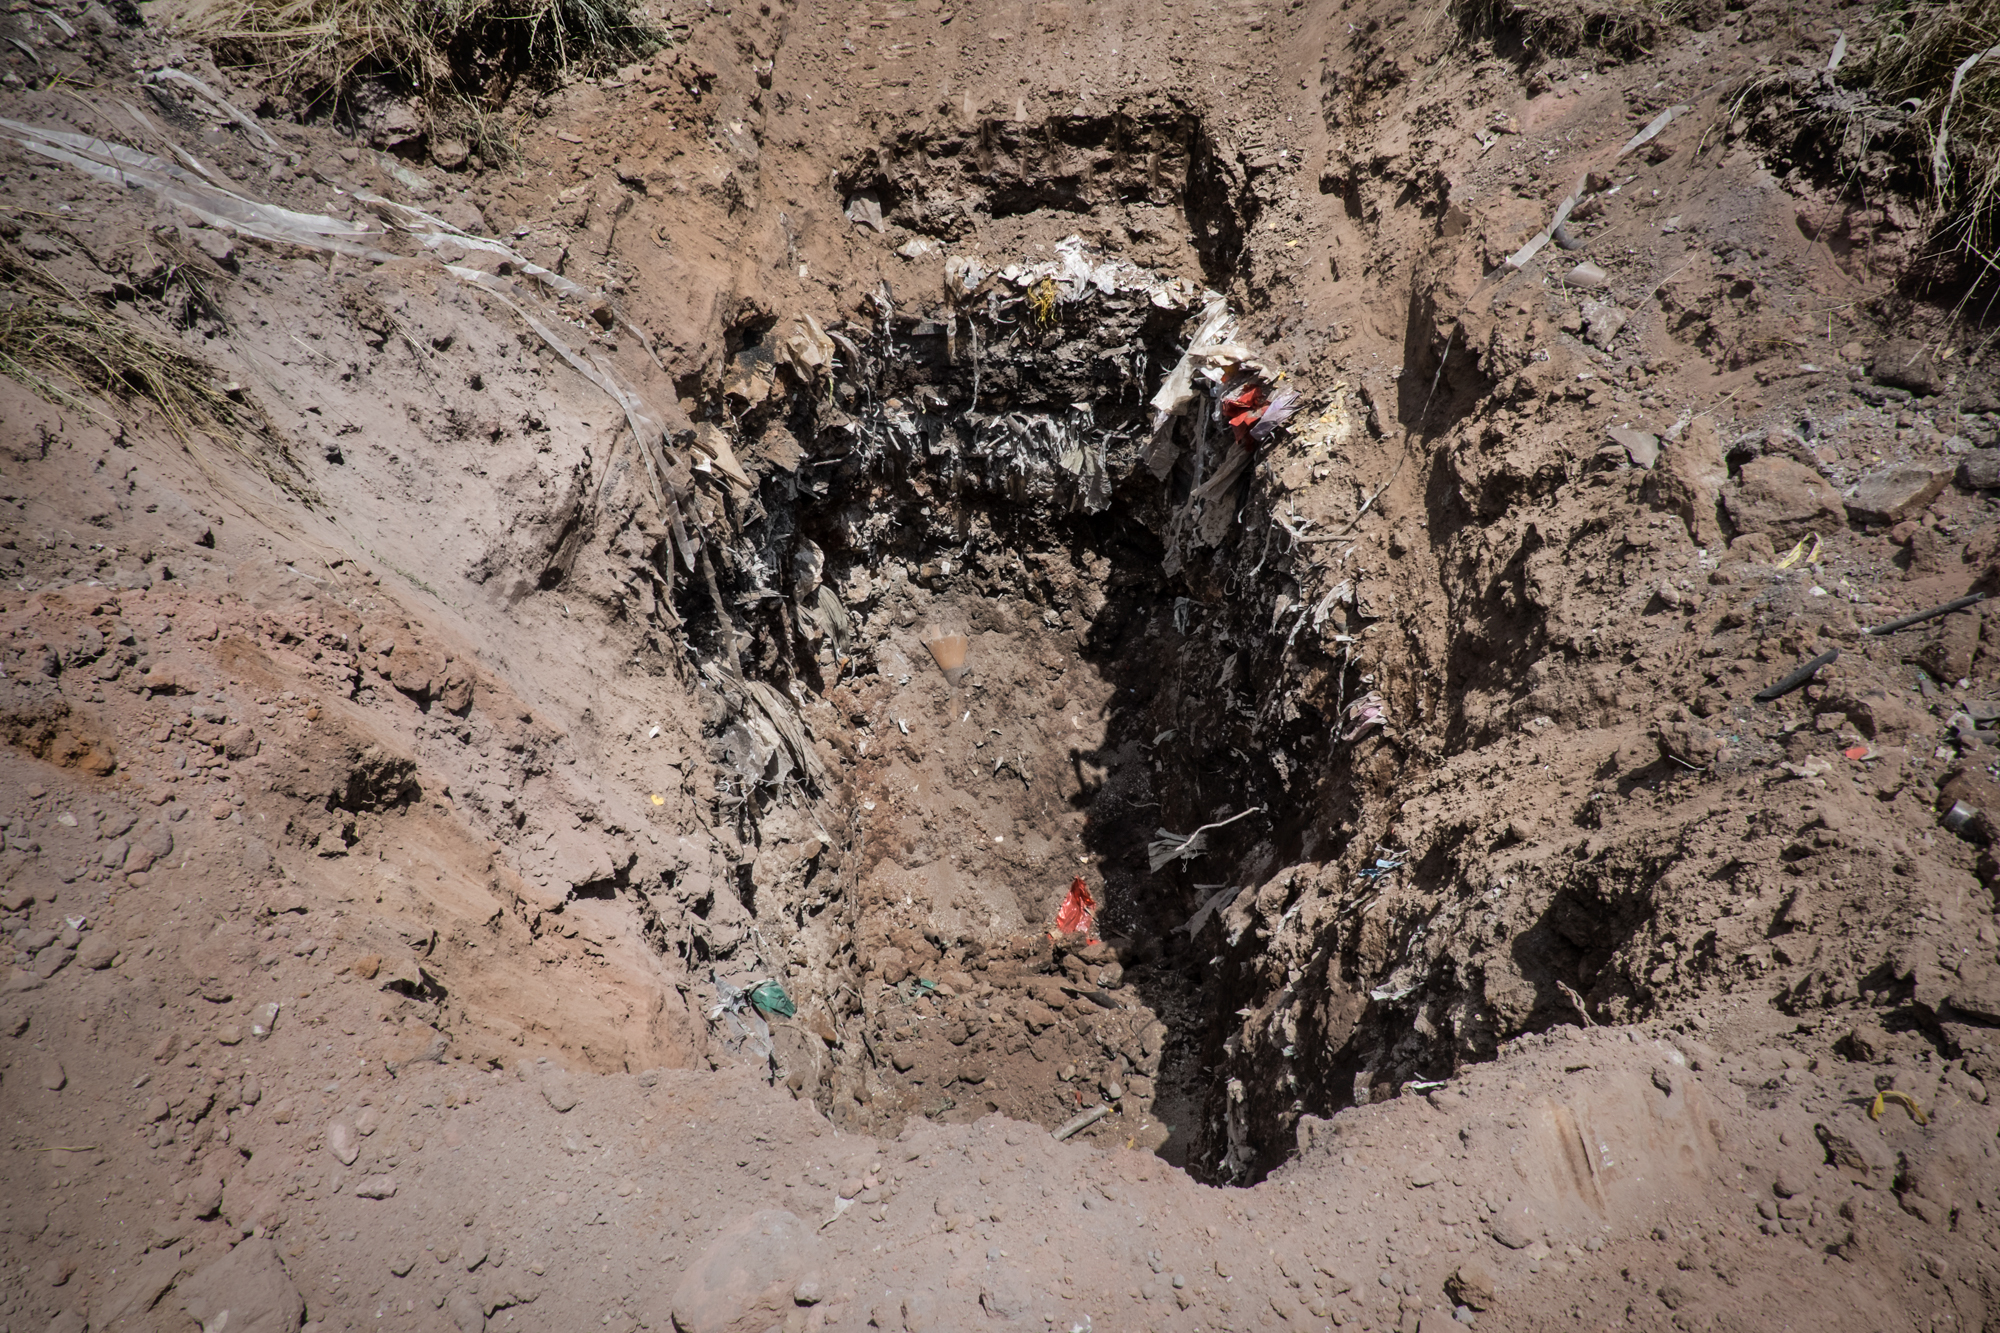  Calvi Risorta, Caserta, 2015. Rinvenimento di rifiuti in seguito a scavi. Sono risultati tossici e nocivi, provenienti da industrie chimiche locali e estere (Francia, Spagna e Cina).&nbsp; 